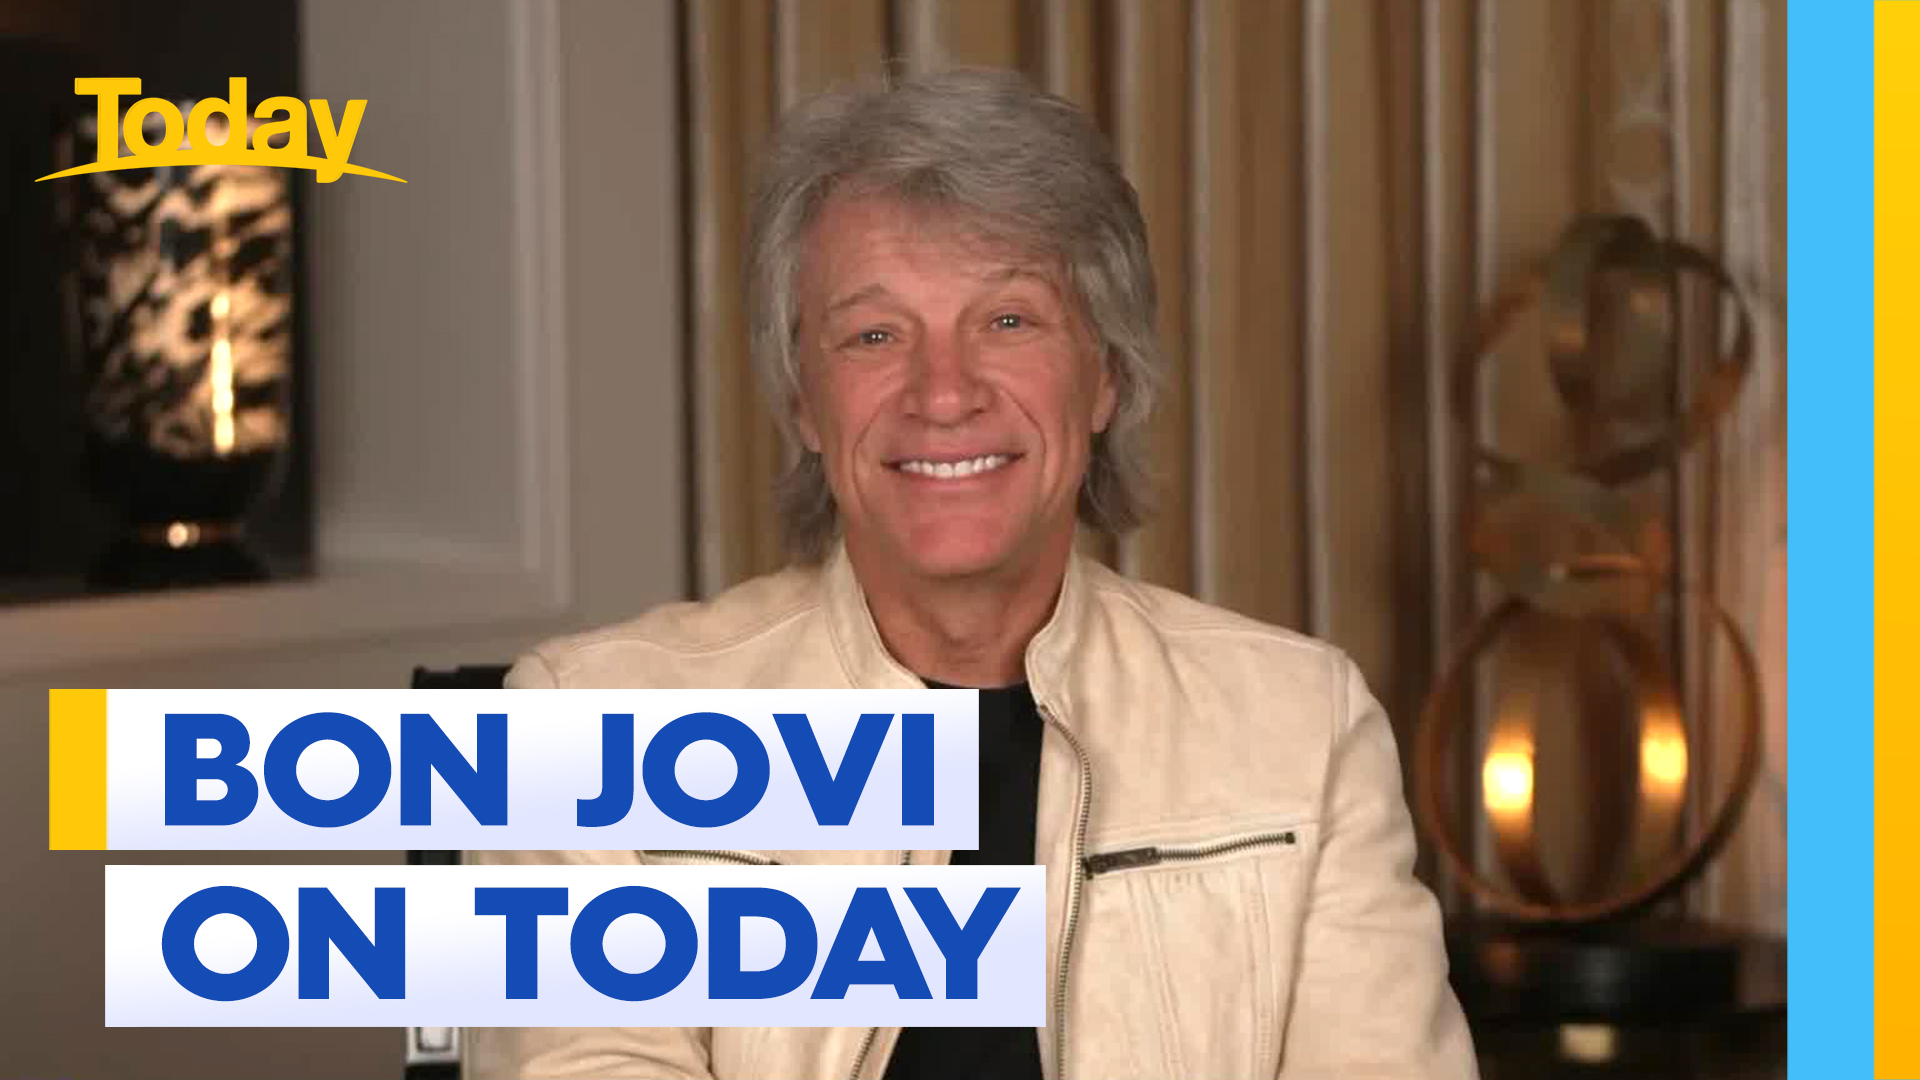 Jon Bon Jovi on Today